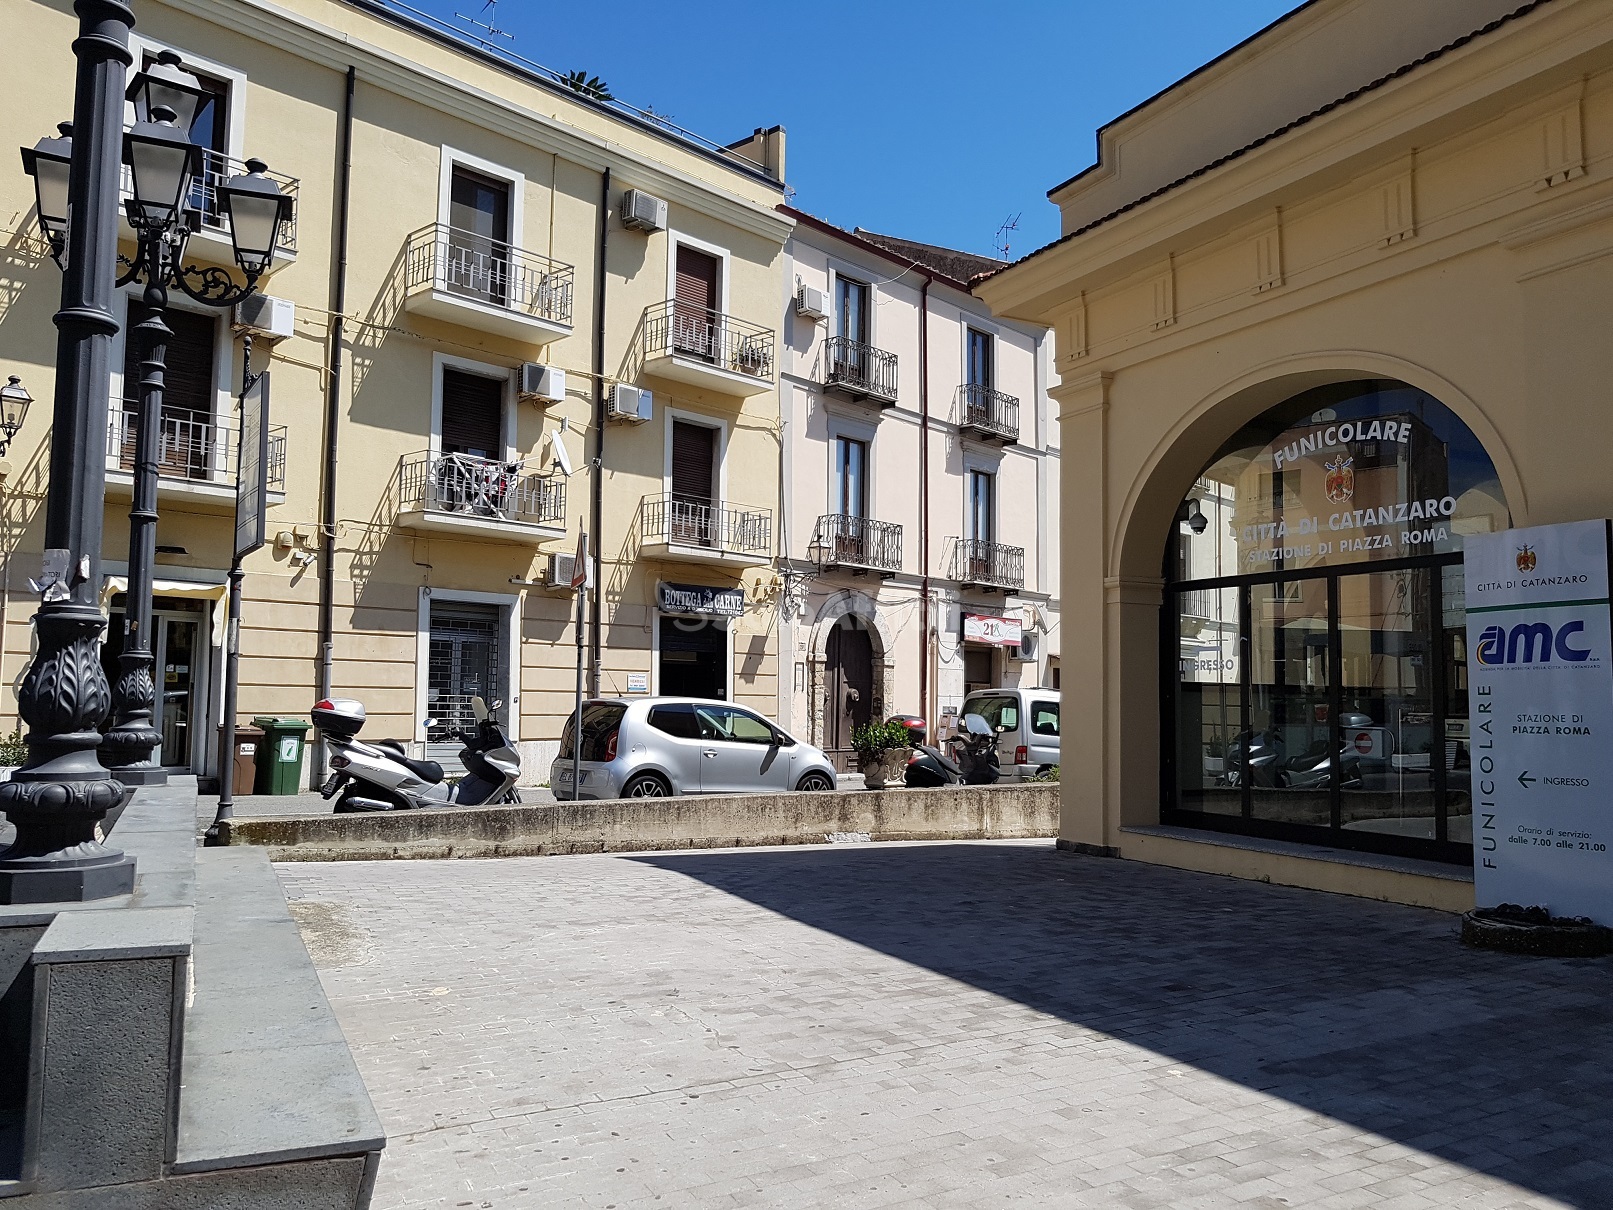 Locale commerciale in affitto, Catanzaro centro storico